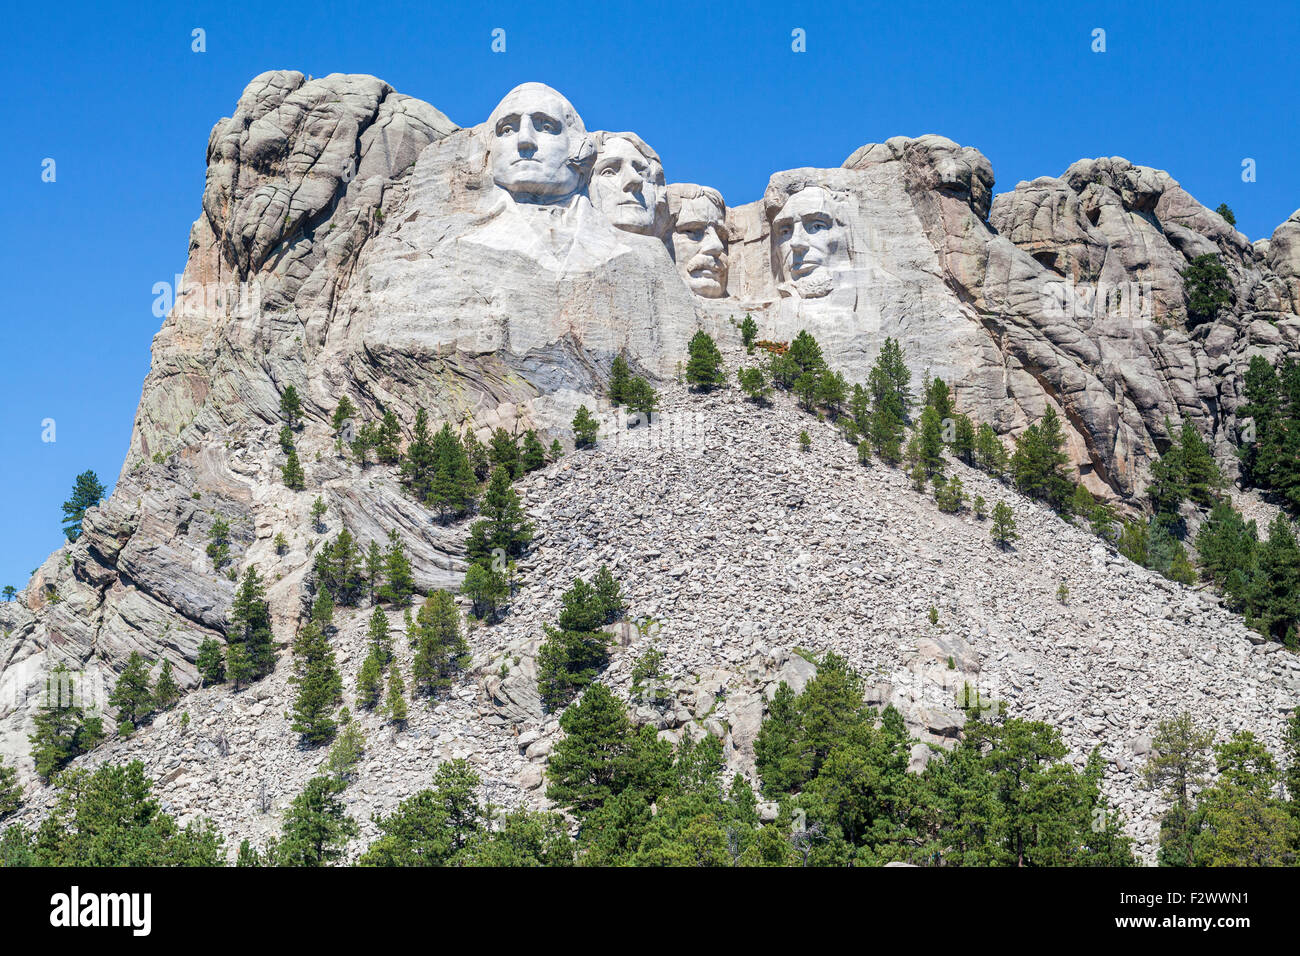 Une vue sur le Mont Rushmore National Memorial, dans le Dakota du Sud. Banque D'Images